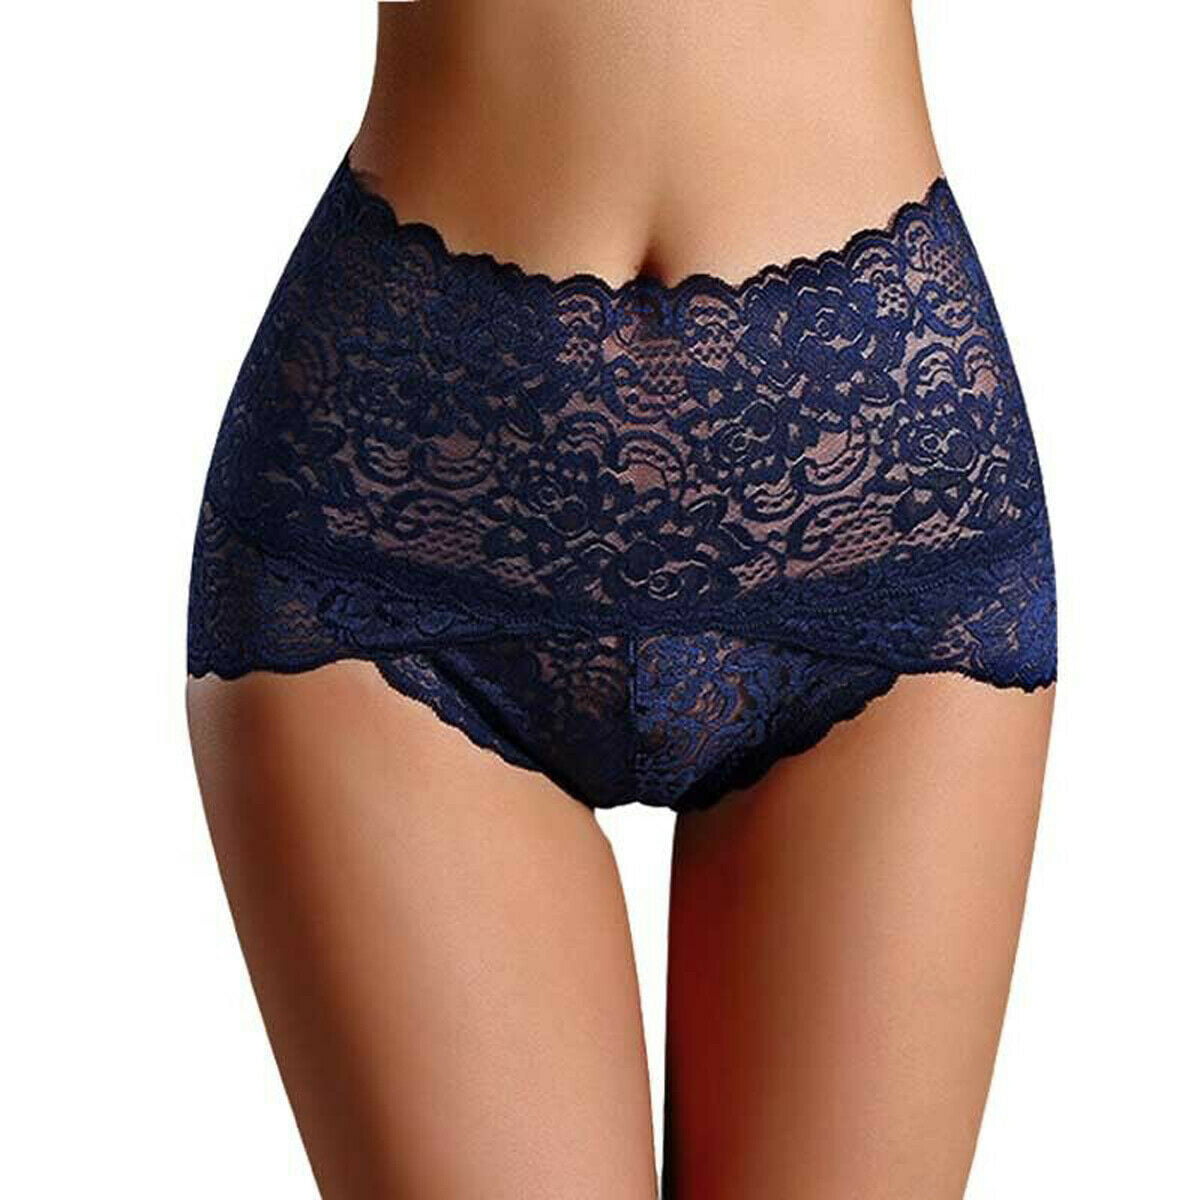 Womens Underwear Lace G-string Briefs Panties High-Waist Thong Lingerie Knicker#